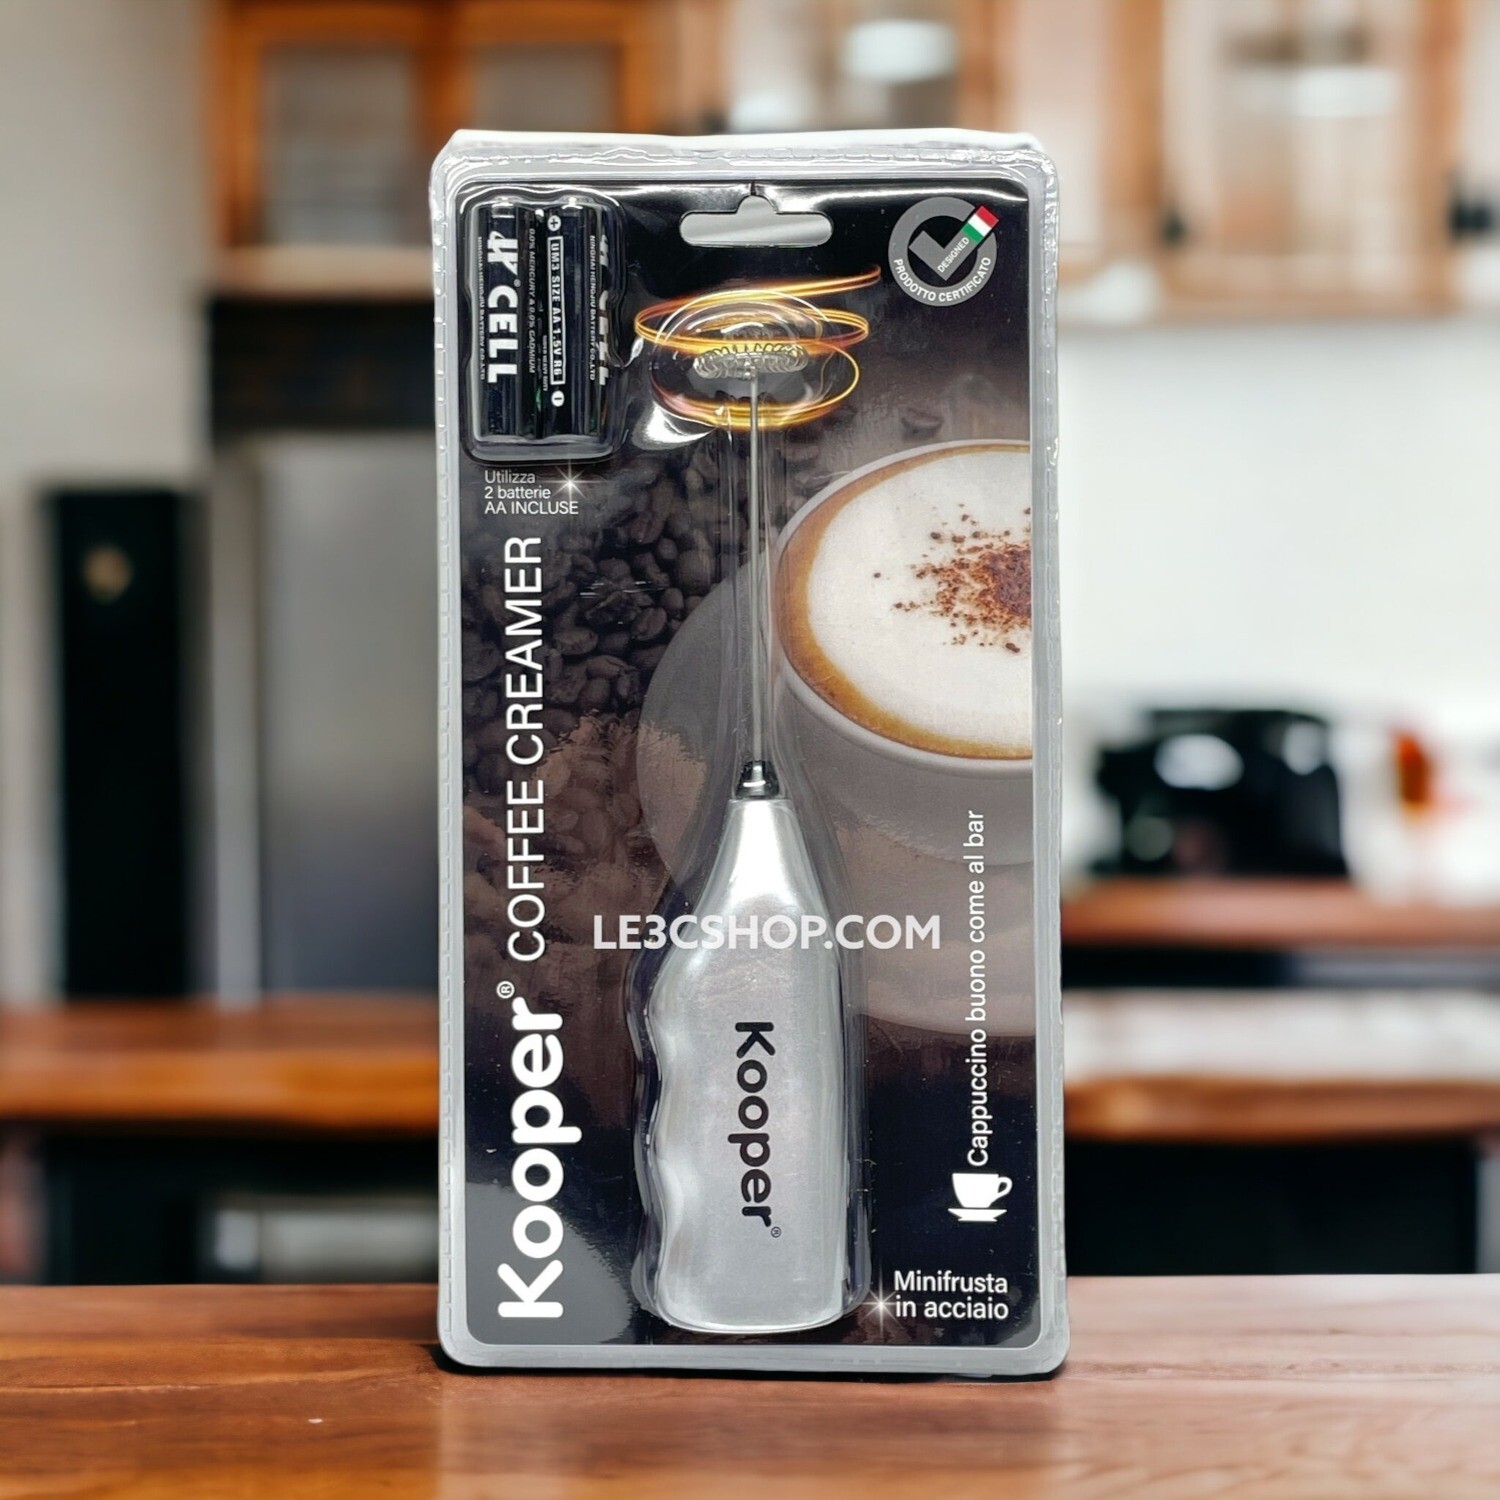 Coffee Creamer Kooper: Crea il Tuo Cappuccino da Barista a Casa.